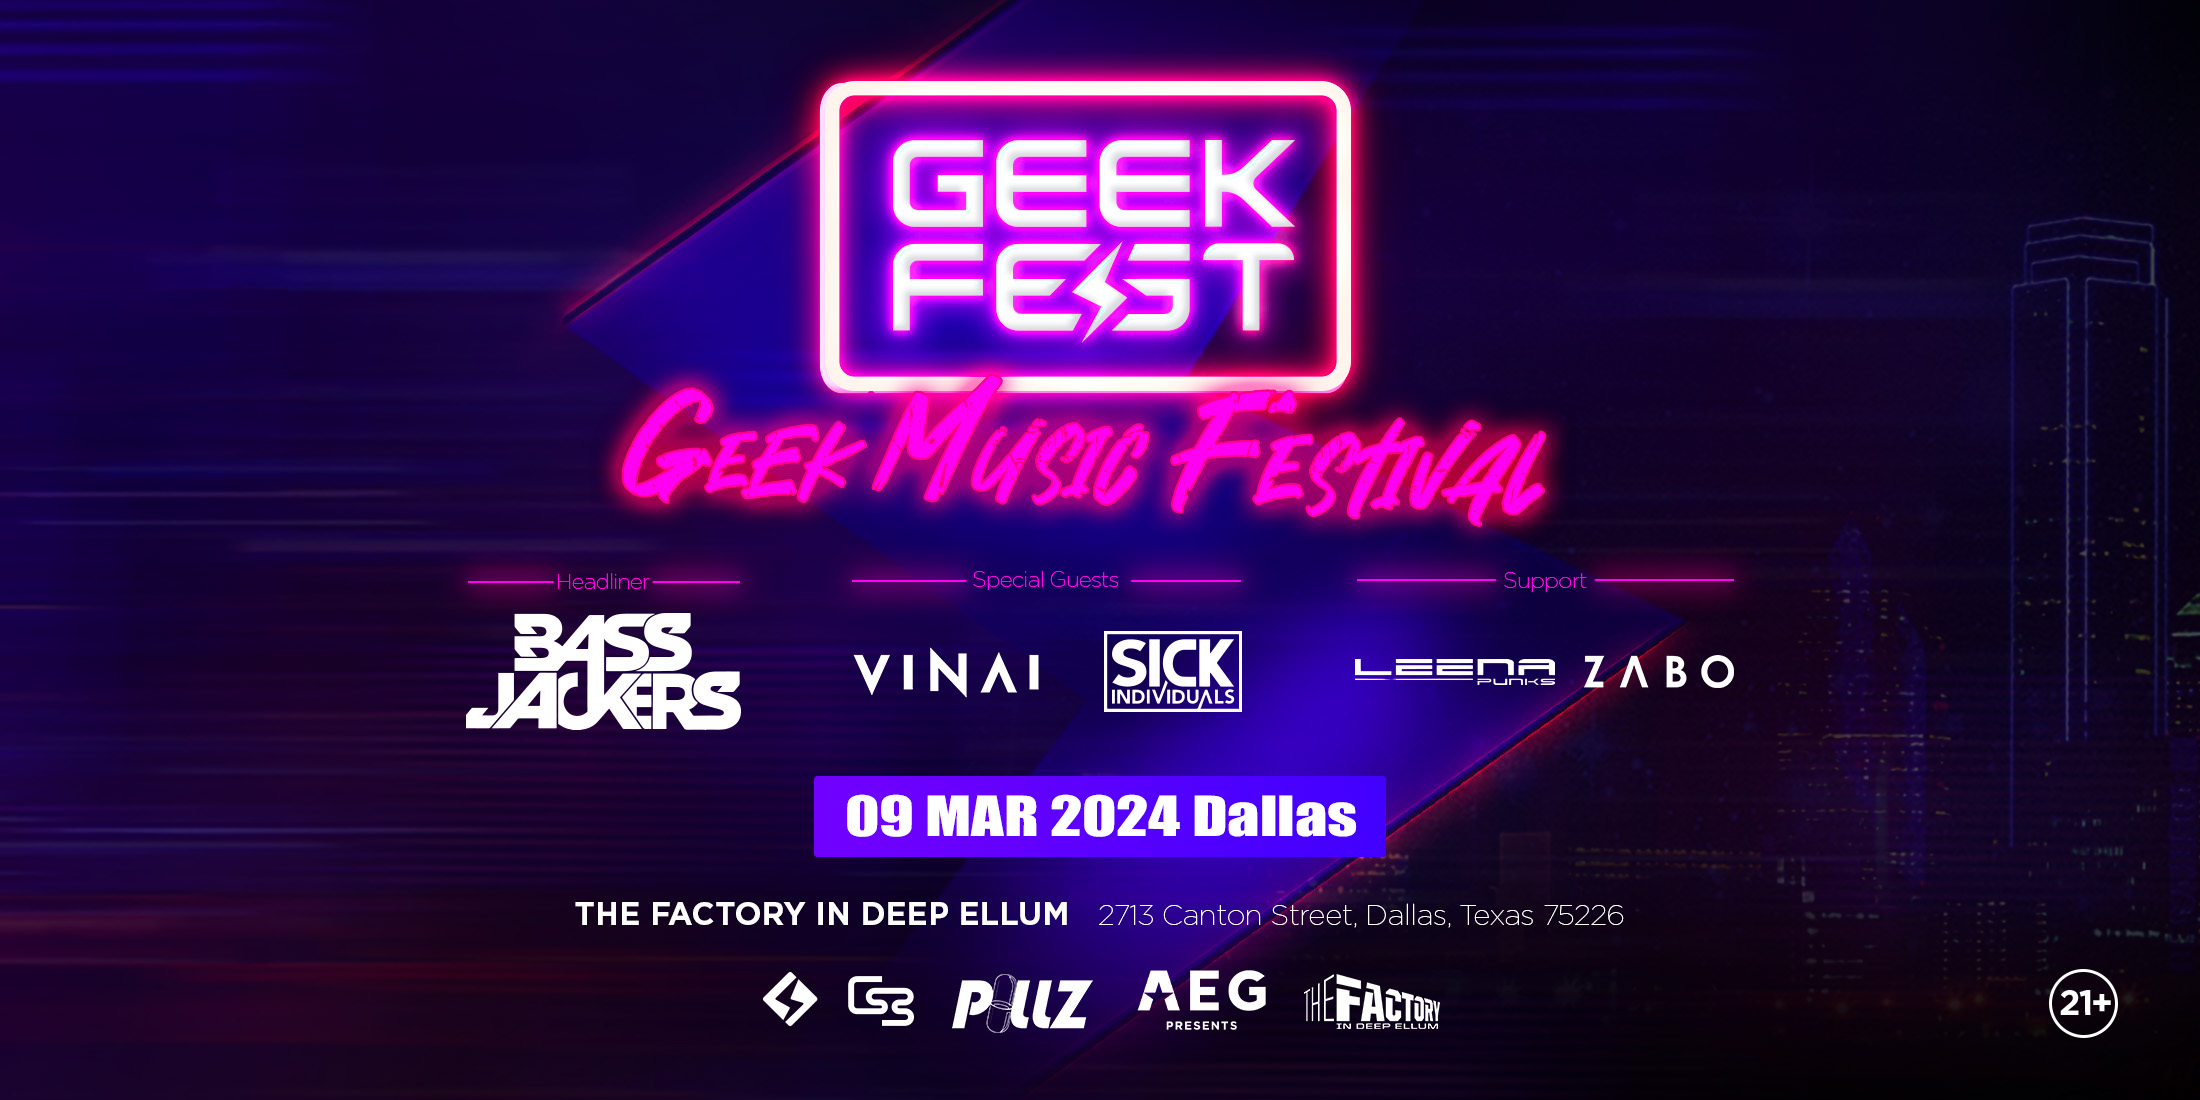 geekfest banner